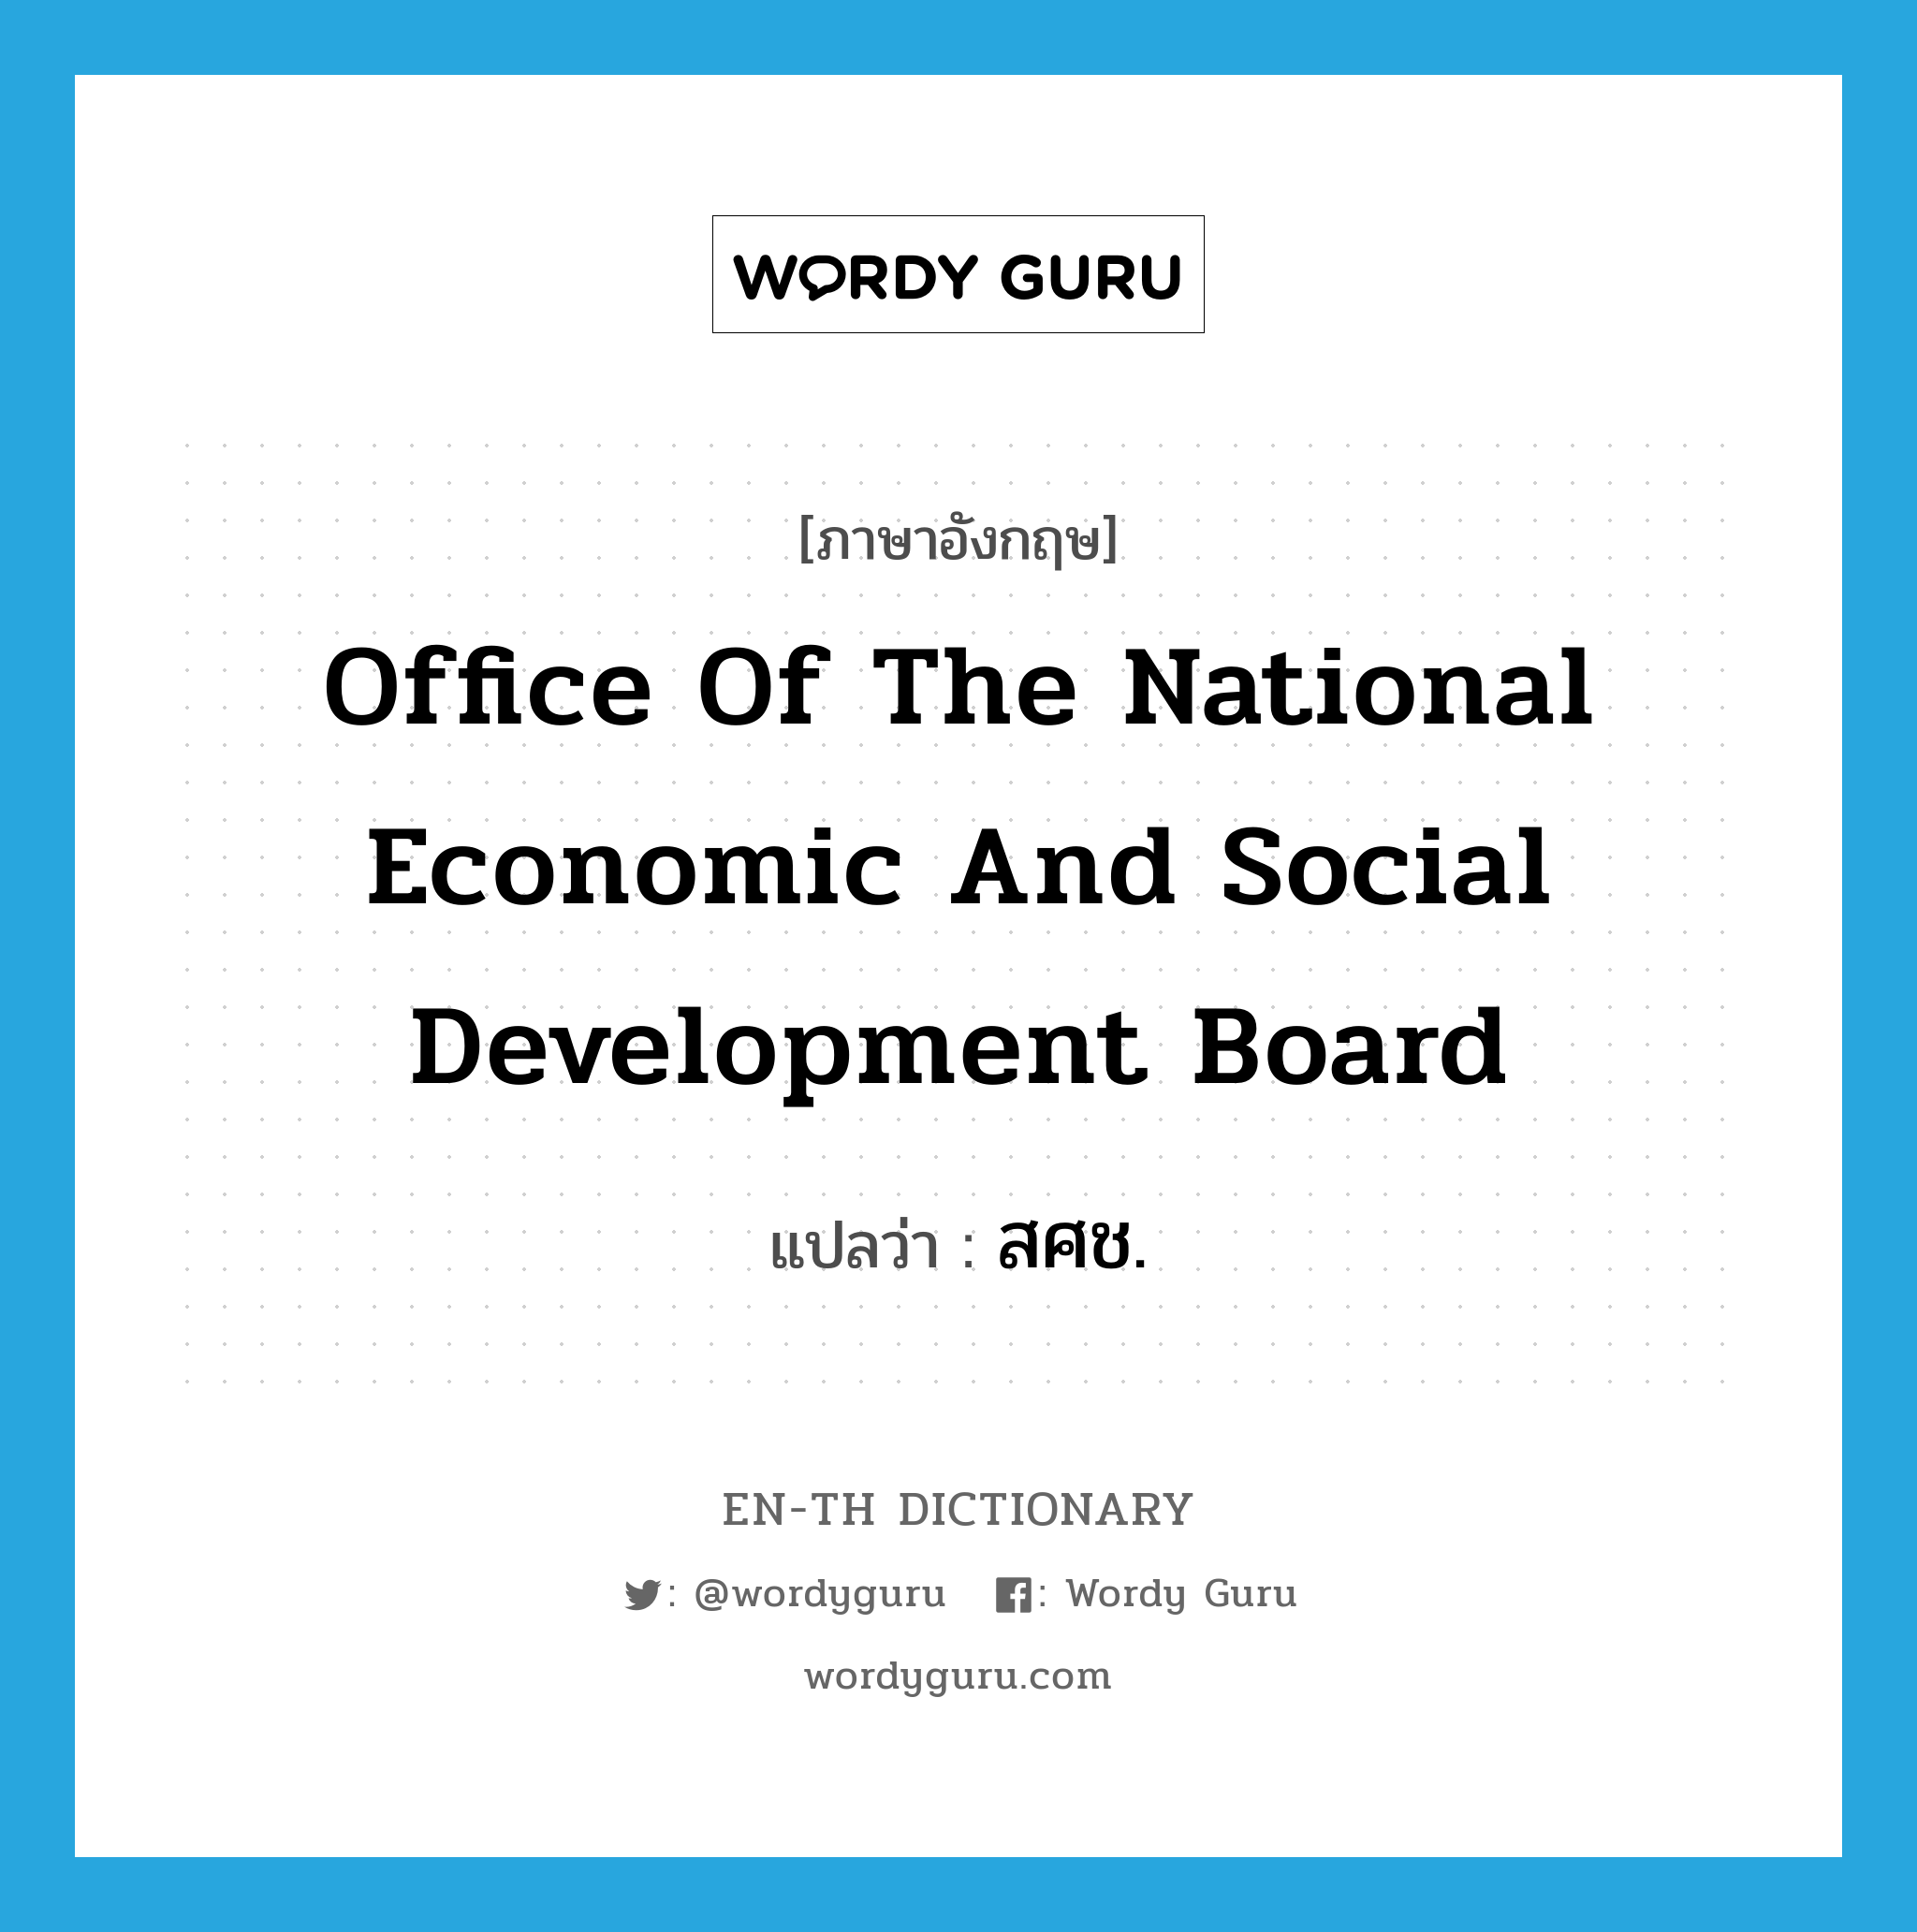 สศช. ภาษาอังกฤษ?, คำศัพท์ภาษาอังกฤษ สศช. แปลว่า Office of the National Economic and Social Development Board ประเภท N หมวด N